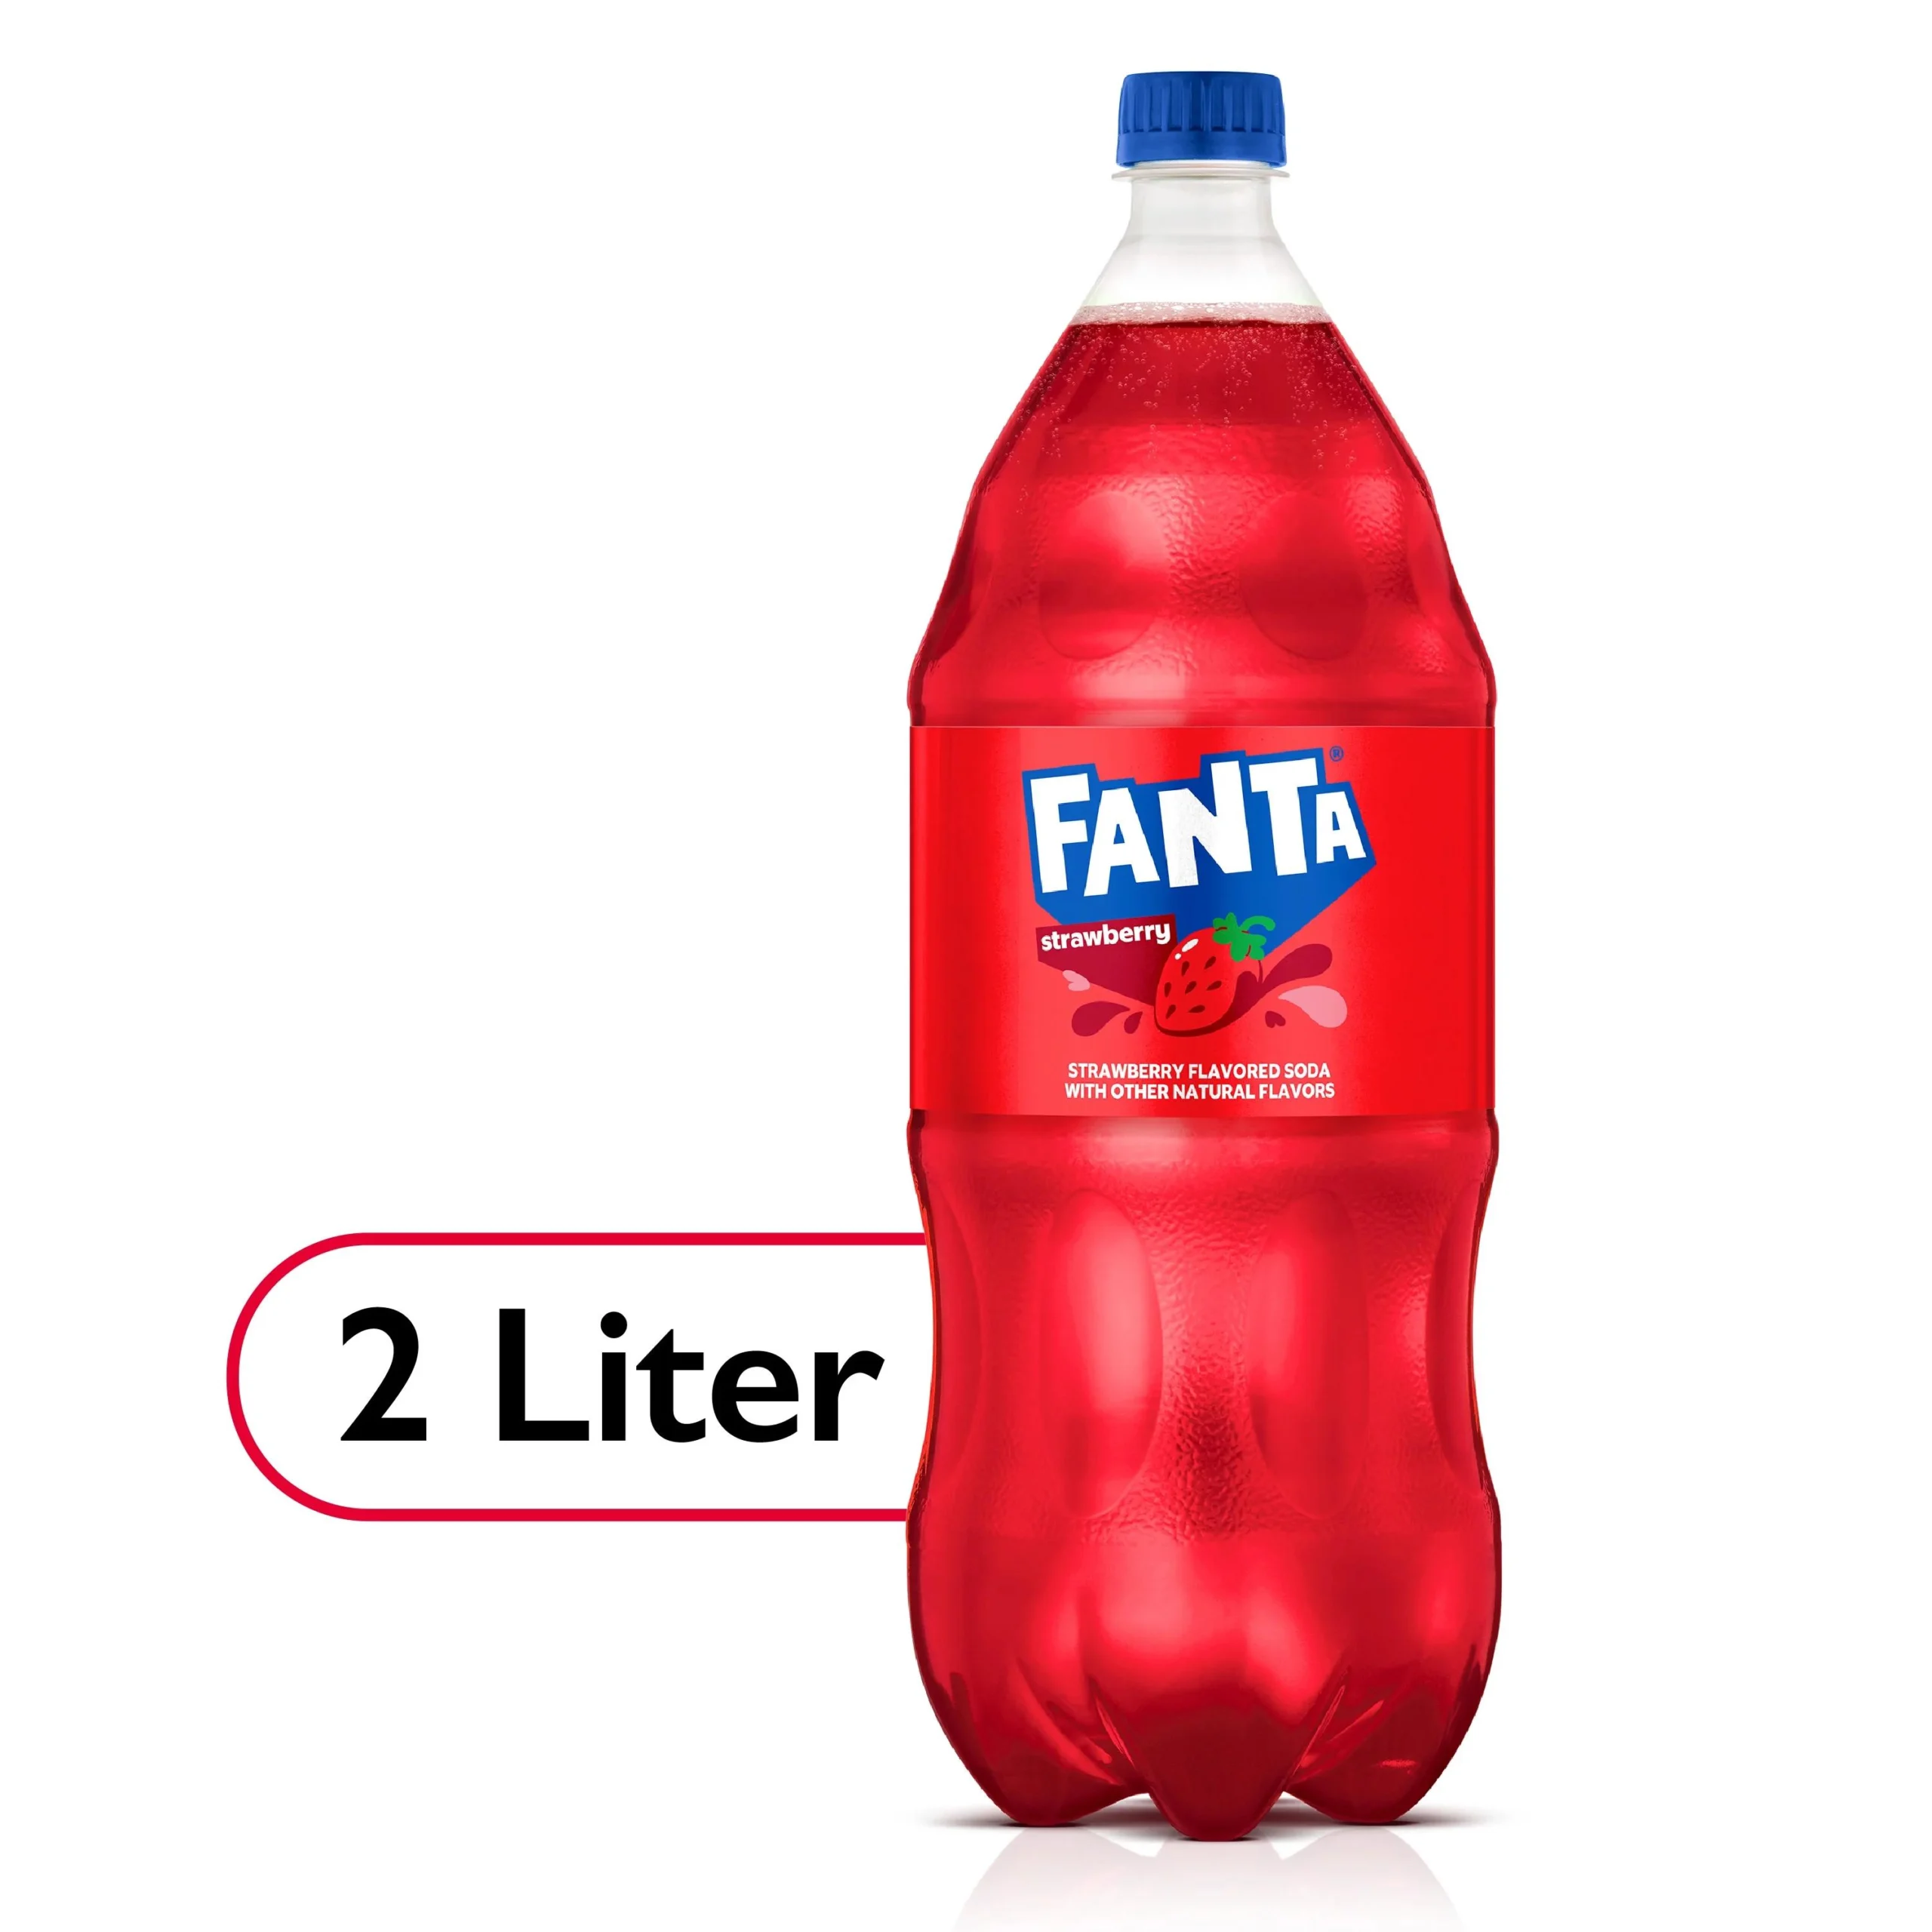 botellas de plastico de fanta de dos litr - Cuánto cuesta una Coca Cola de 2 litros en Argentina